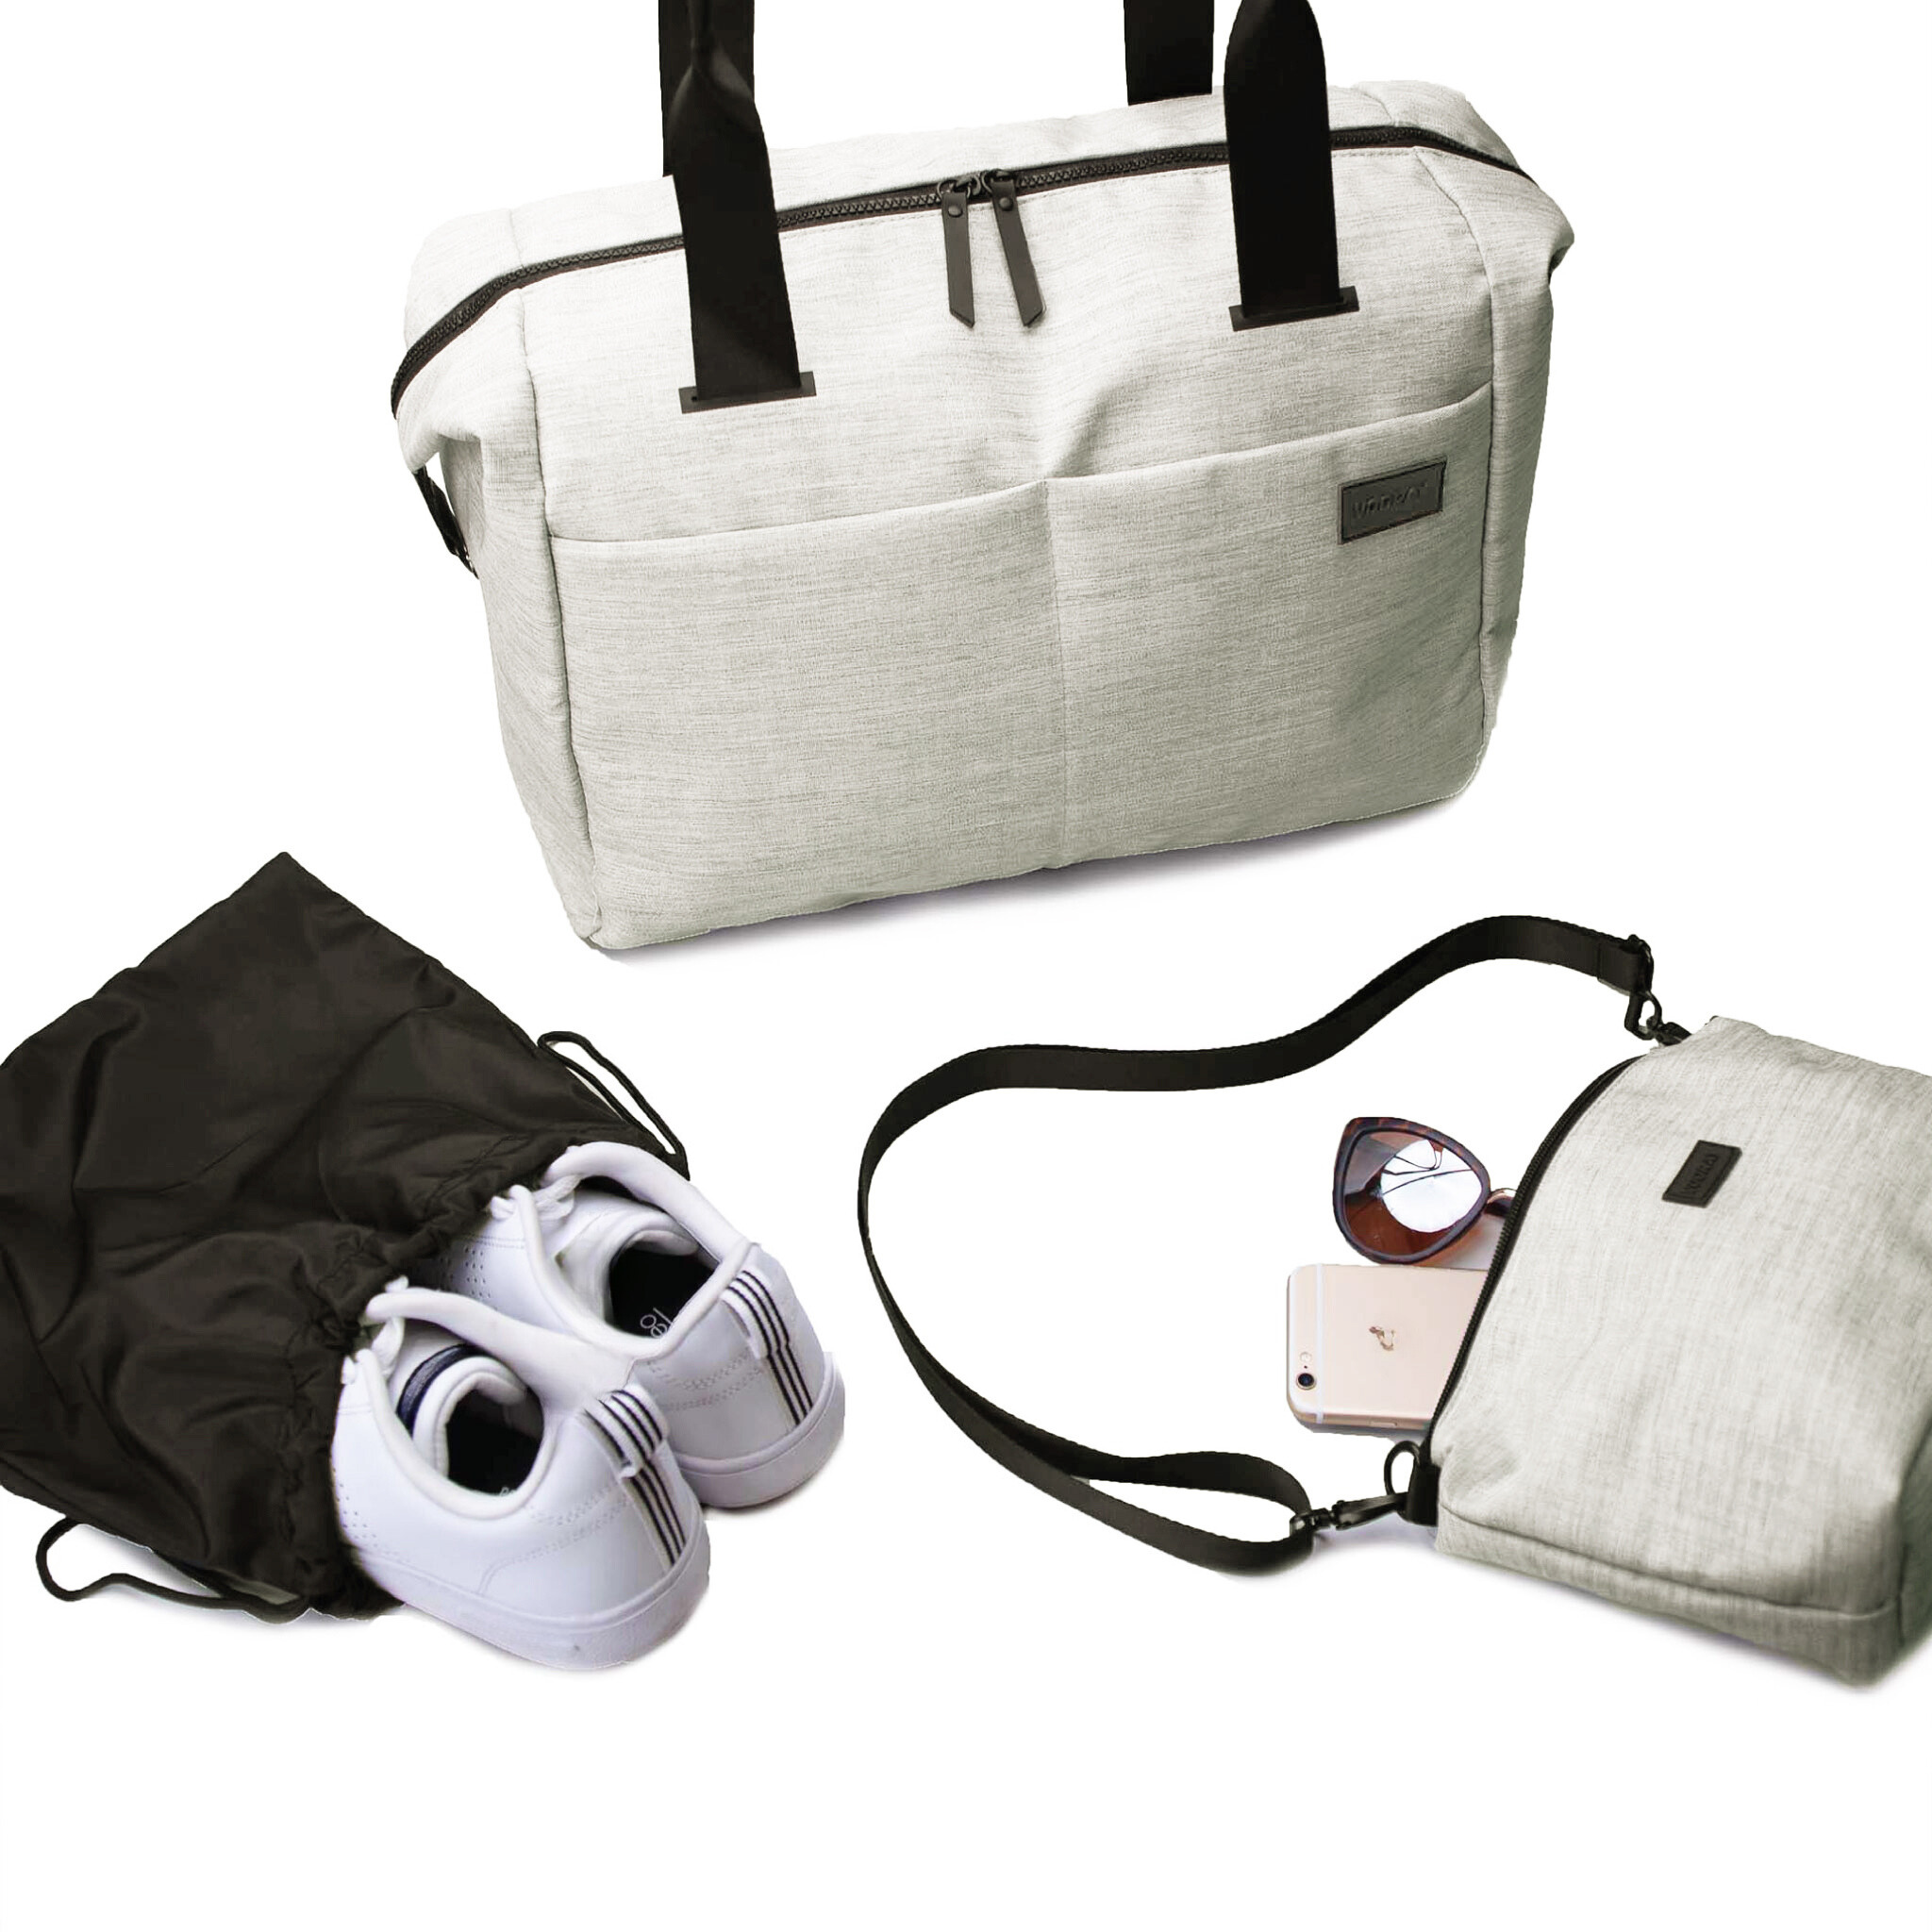 Vooray - Sac de voyage et sac de sport avec pochette pour ordinateur portable, poche pour chaussures et poche sèche ()